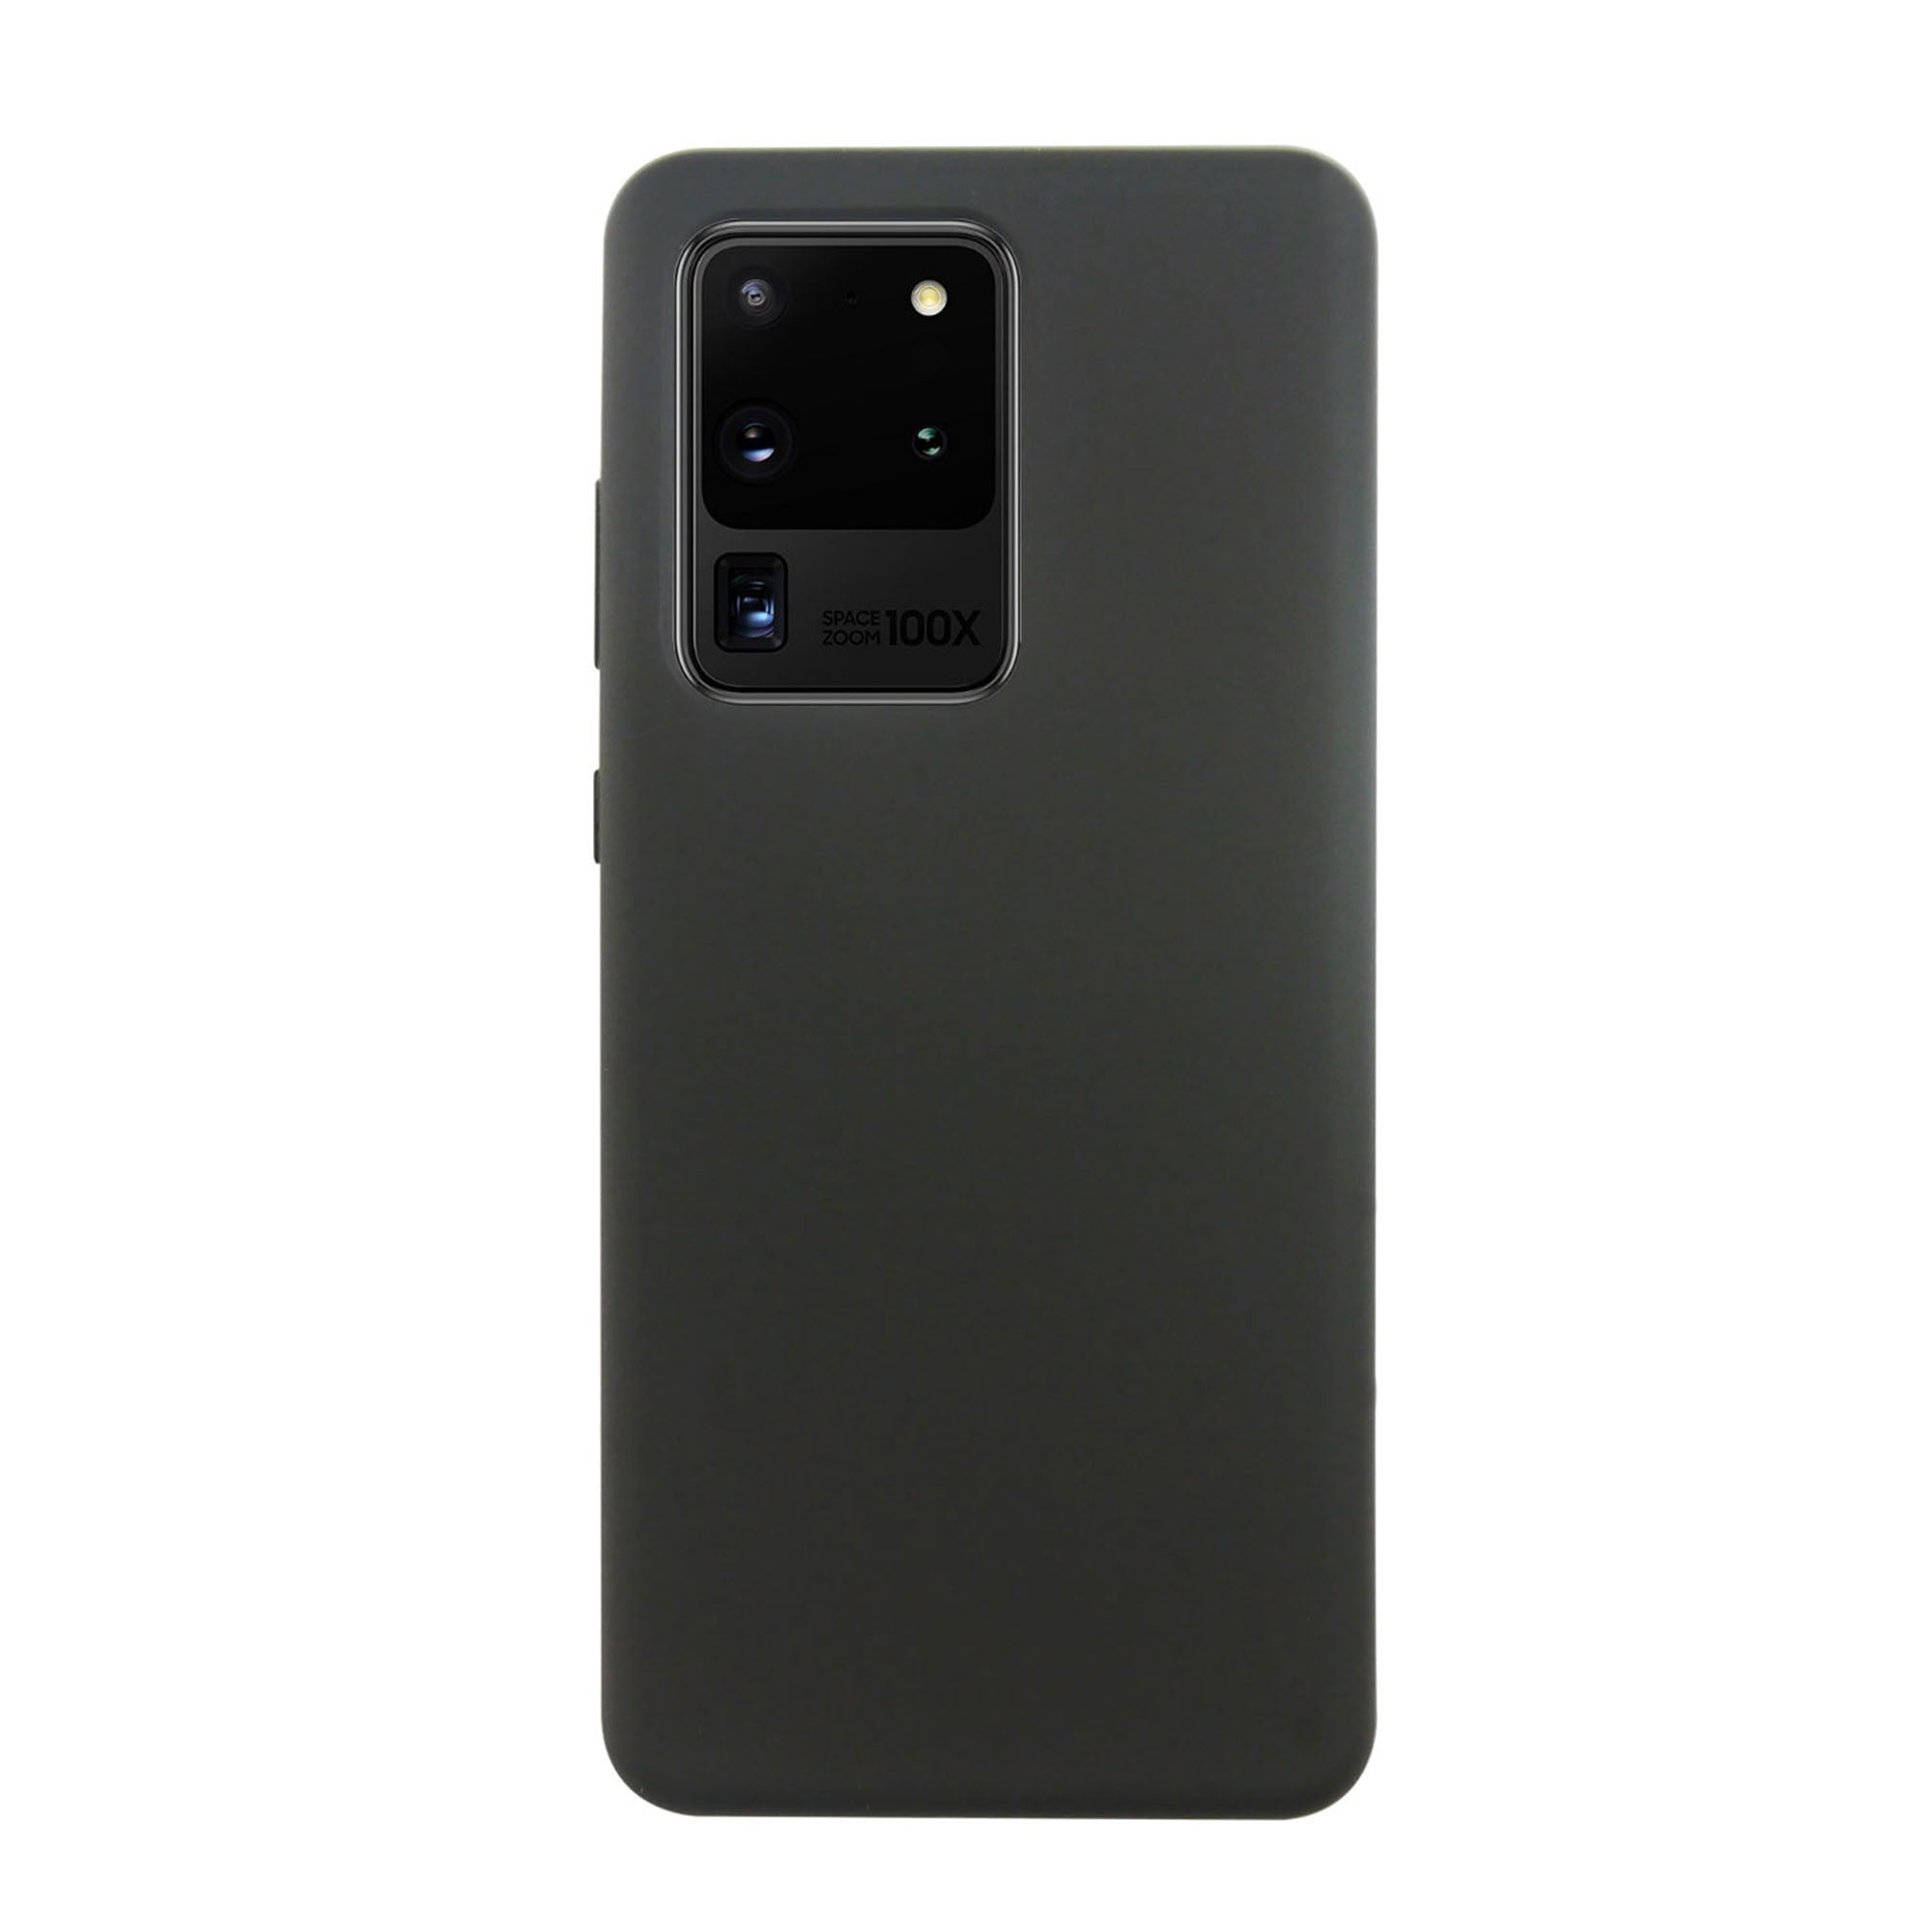 Samsung Galaxy S20 Ultra 5G Uunique Black Liquid Silicone Case - 15-06634